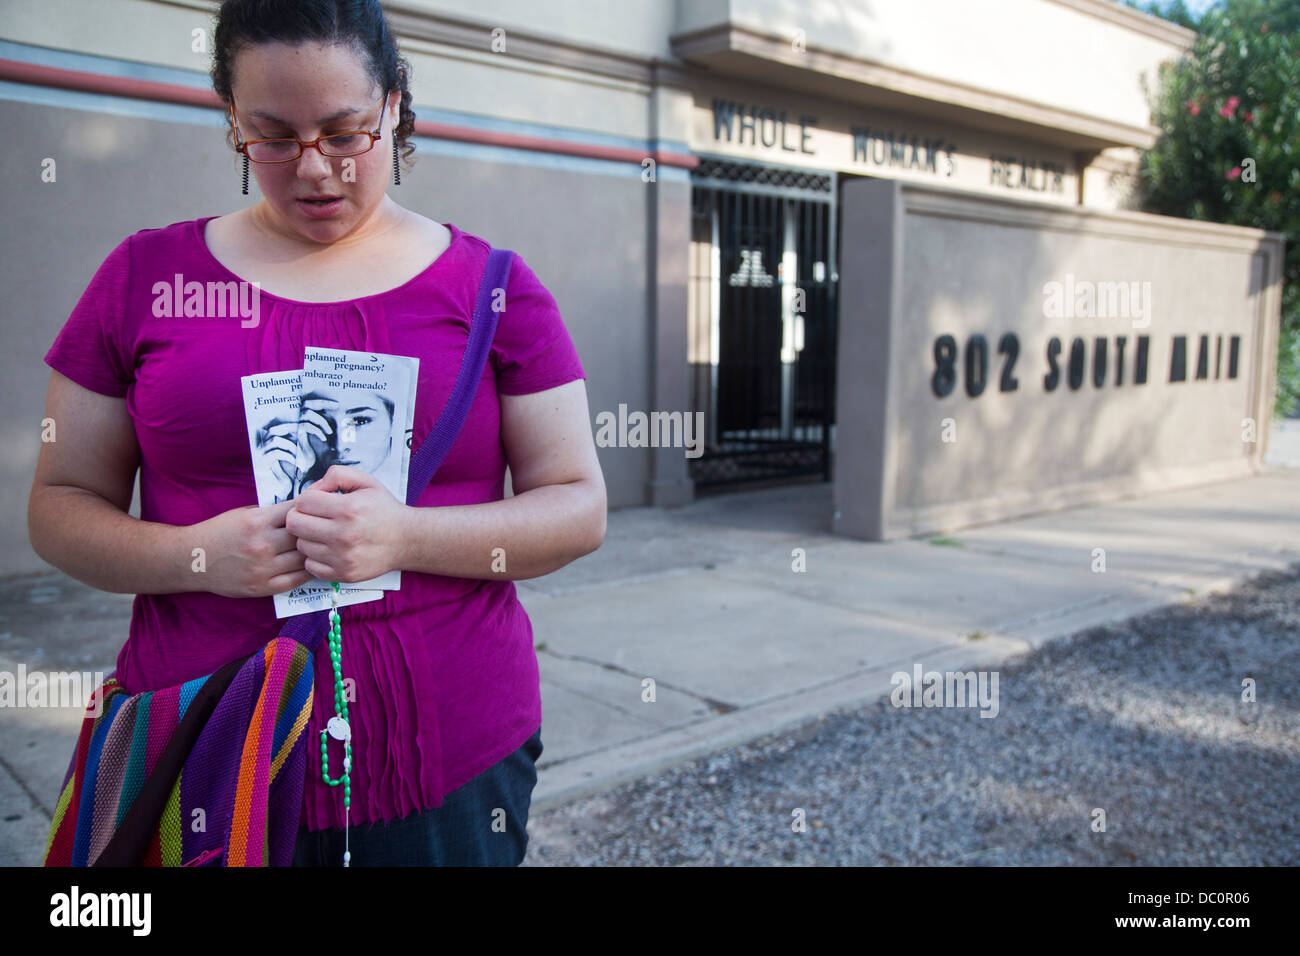 McAllen, Texas - un militant anti-avortement Erika Salazar prie ensemble à l'extérieur de la santé des femmes, une clinique d'avortement. Banque D'Images